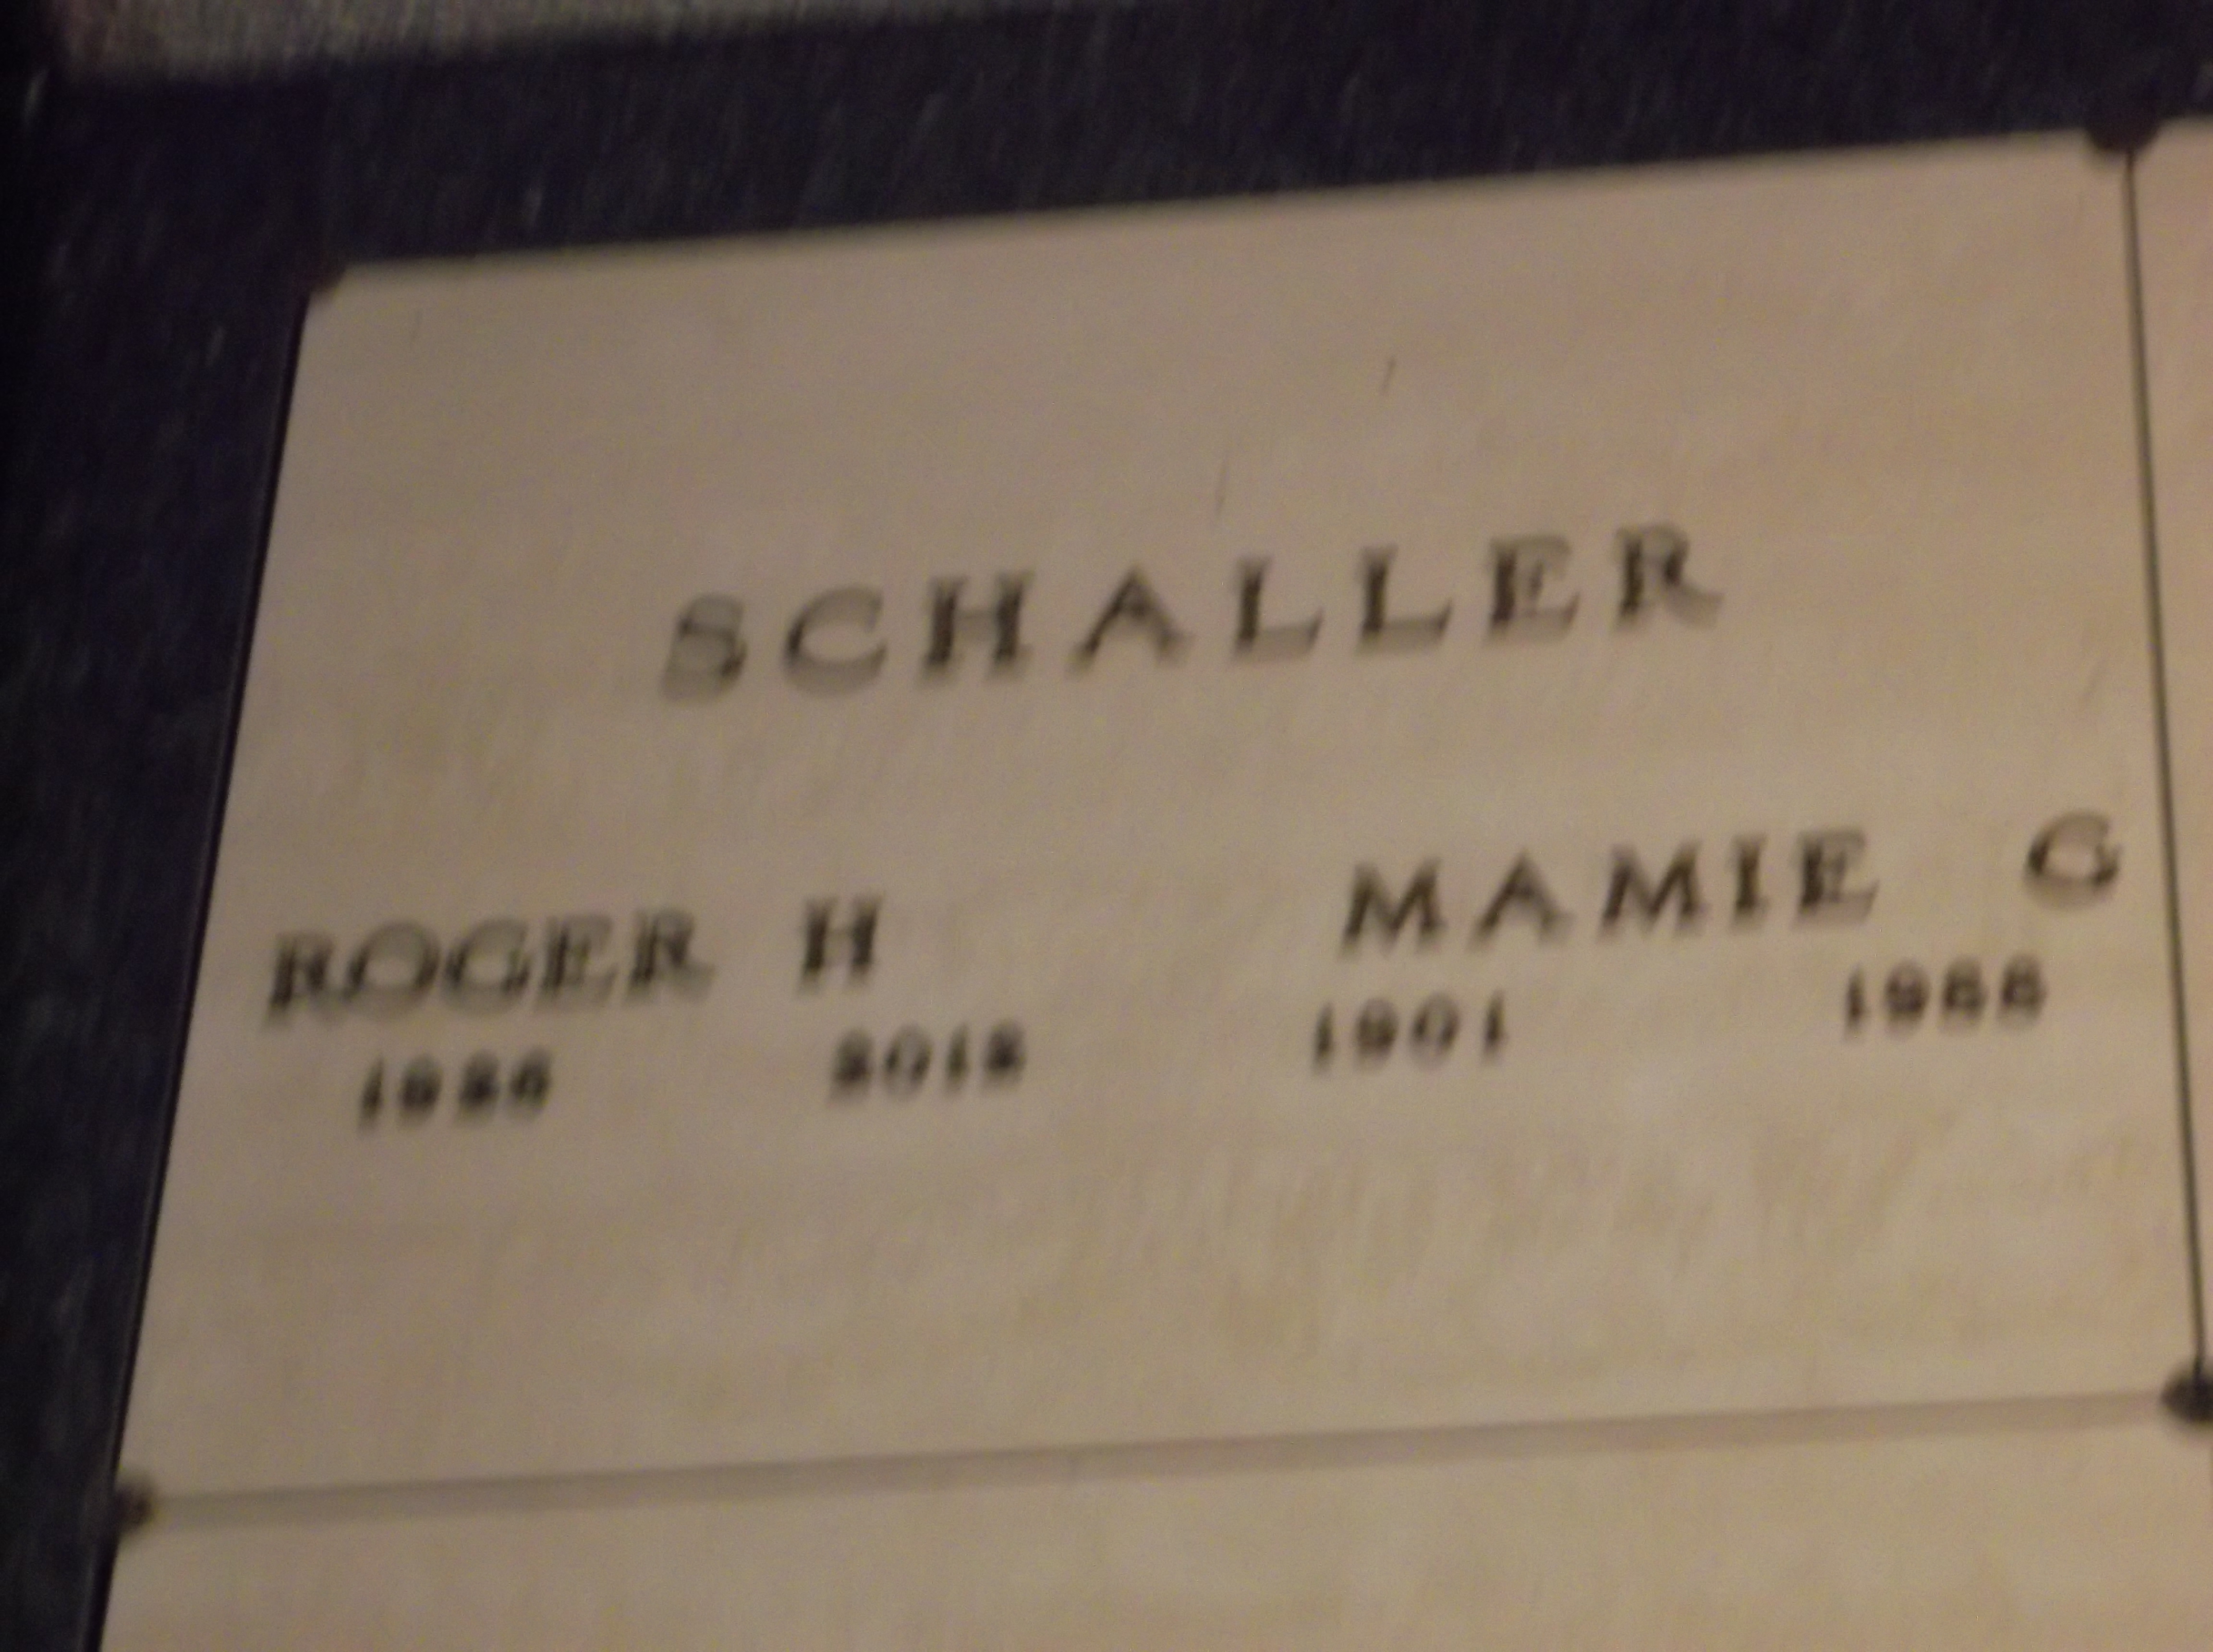 Mamie G Schaller